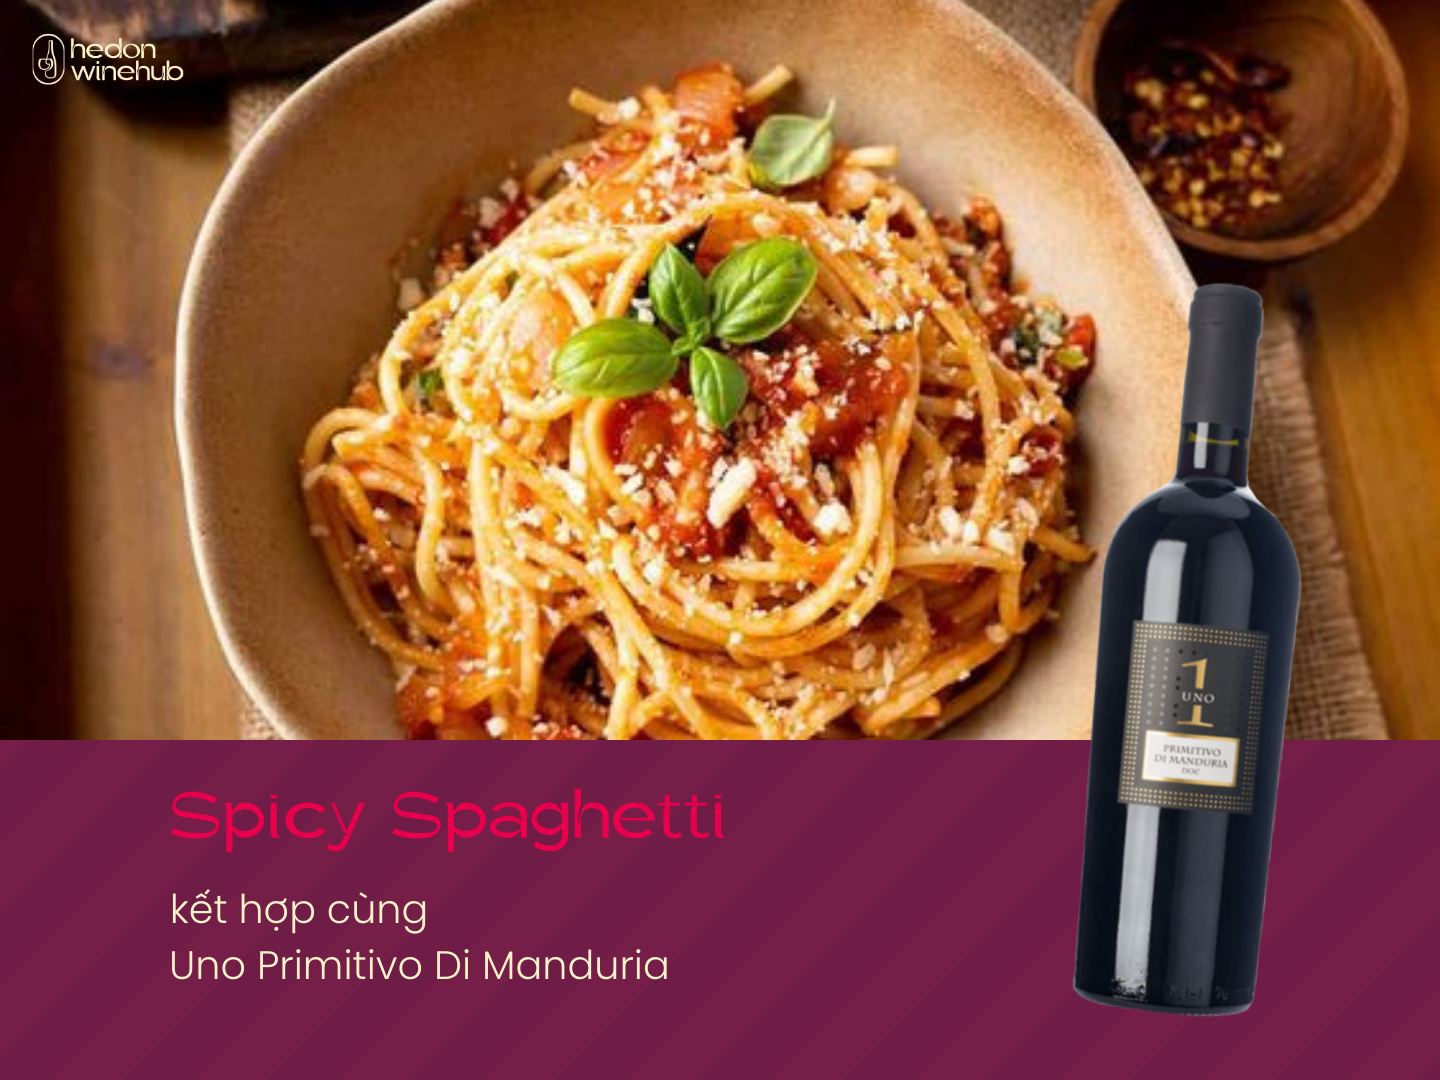 Spicy Spaghetti kết hợp cùng Uno Primitivo Di Manduria